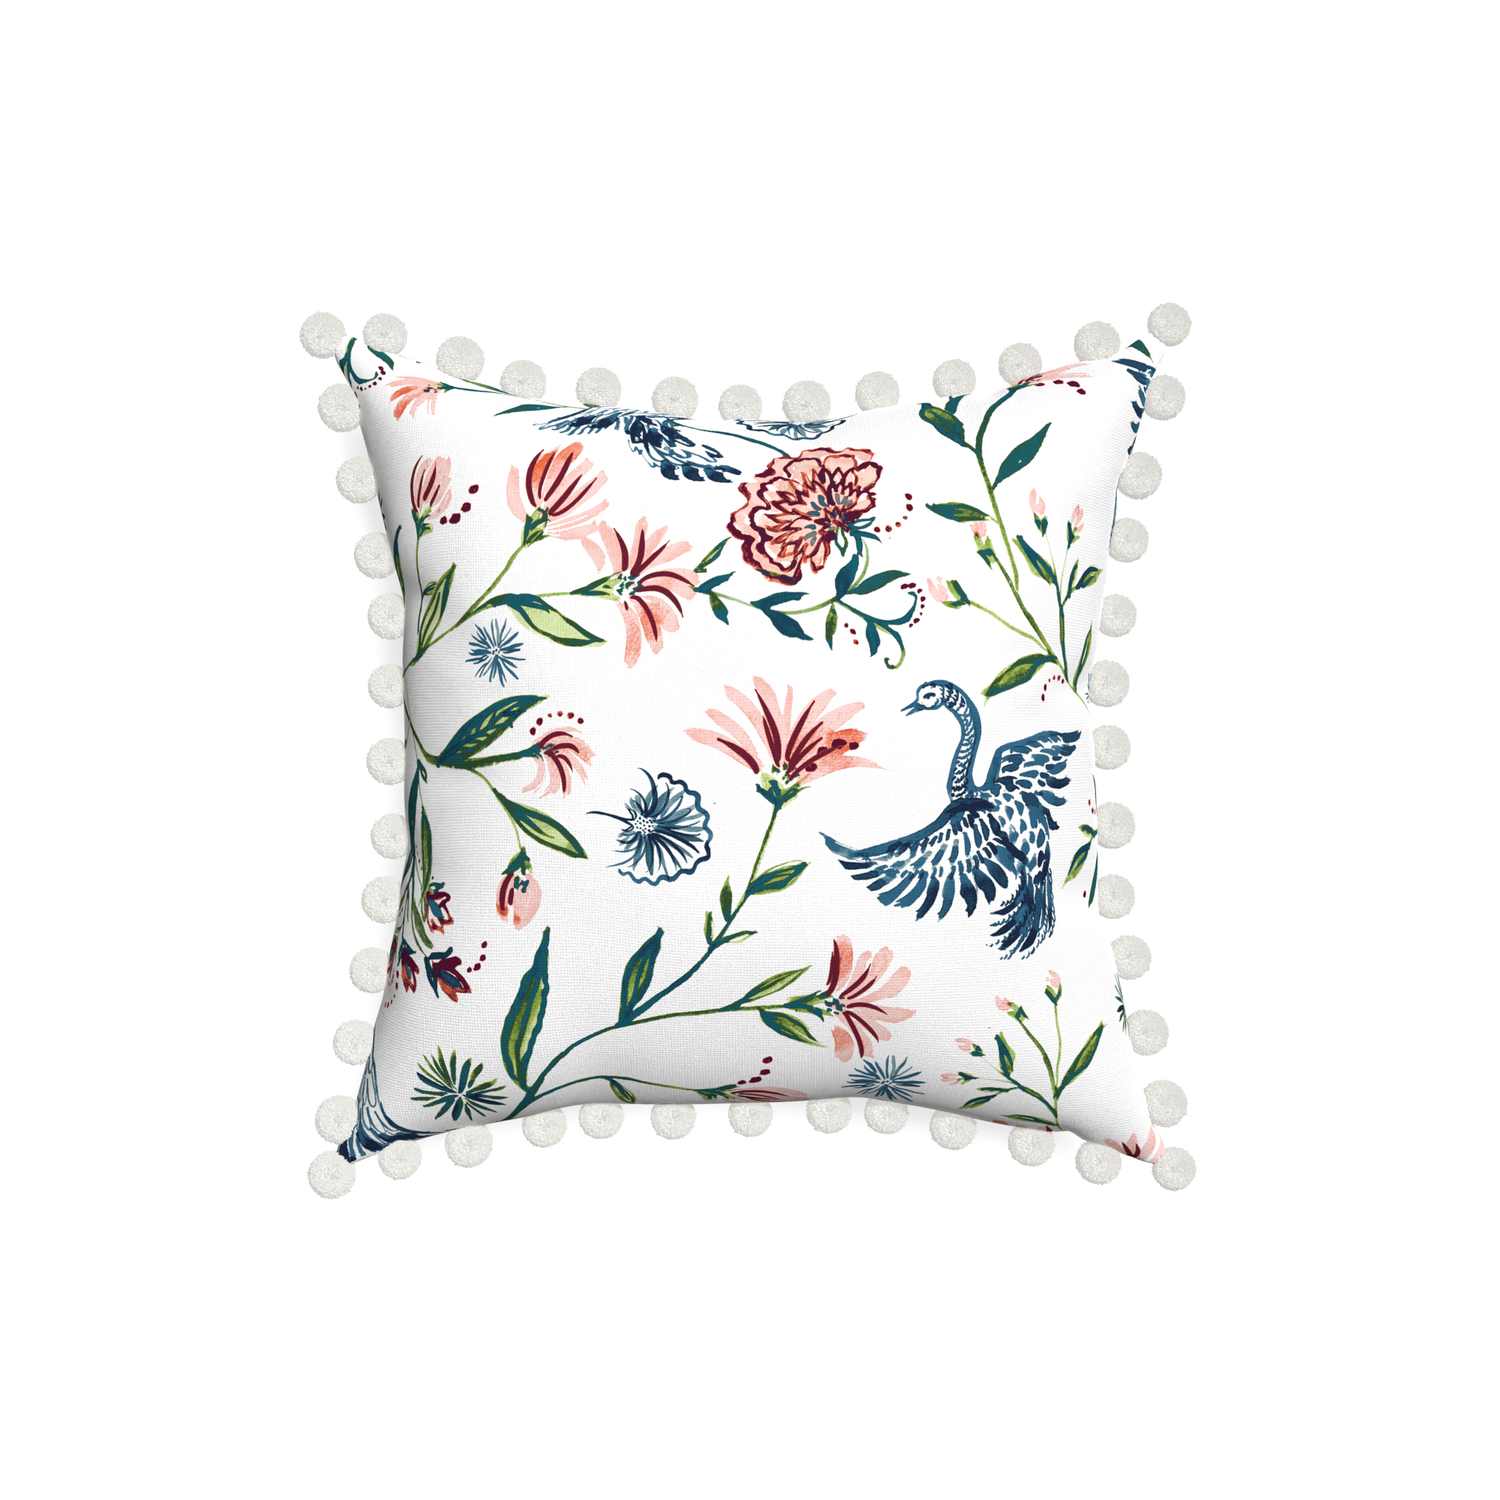 18-square daphne cream custom pillow with snow pom pom on white background